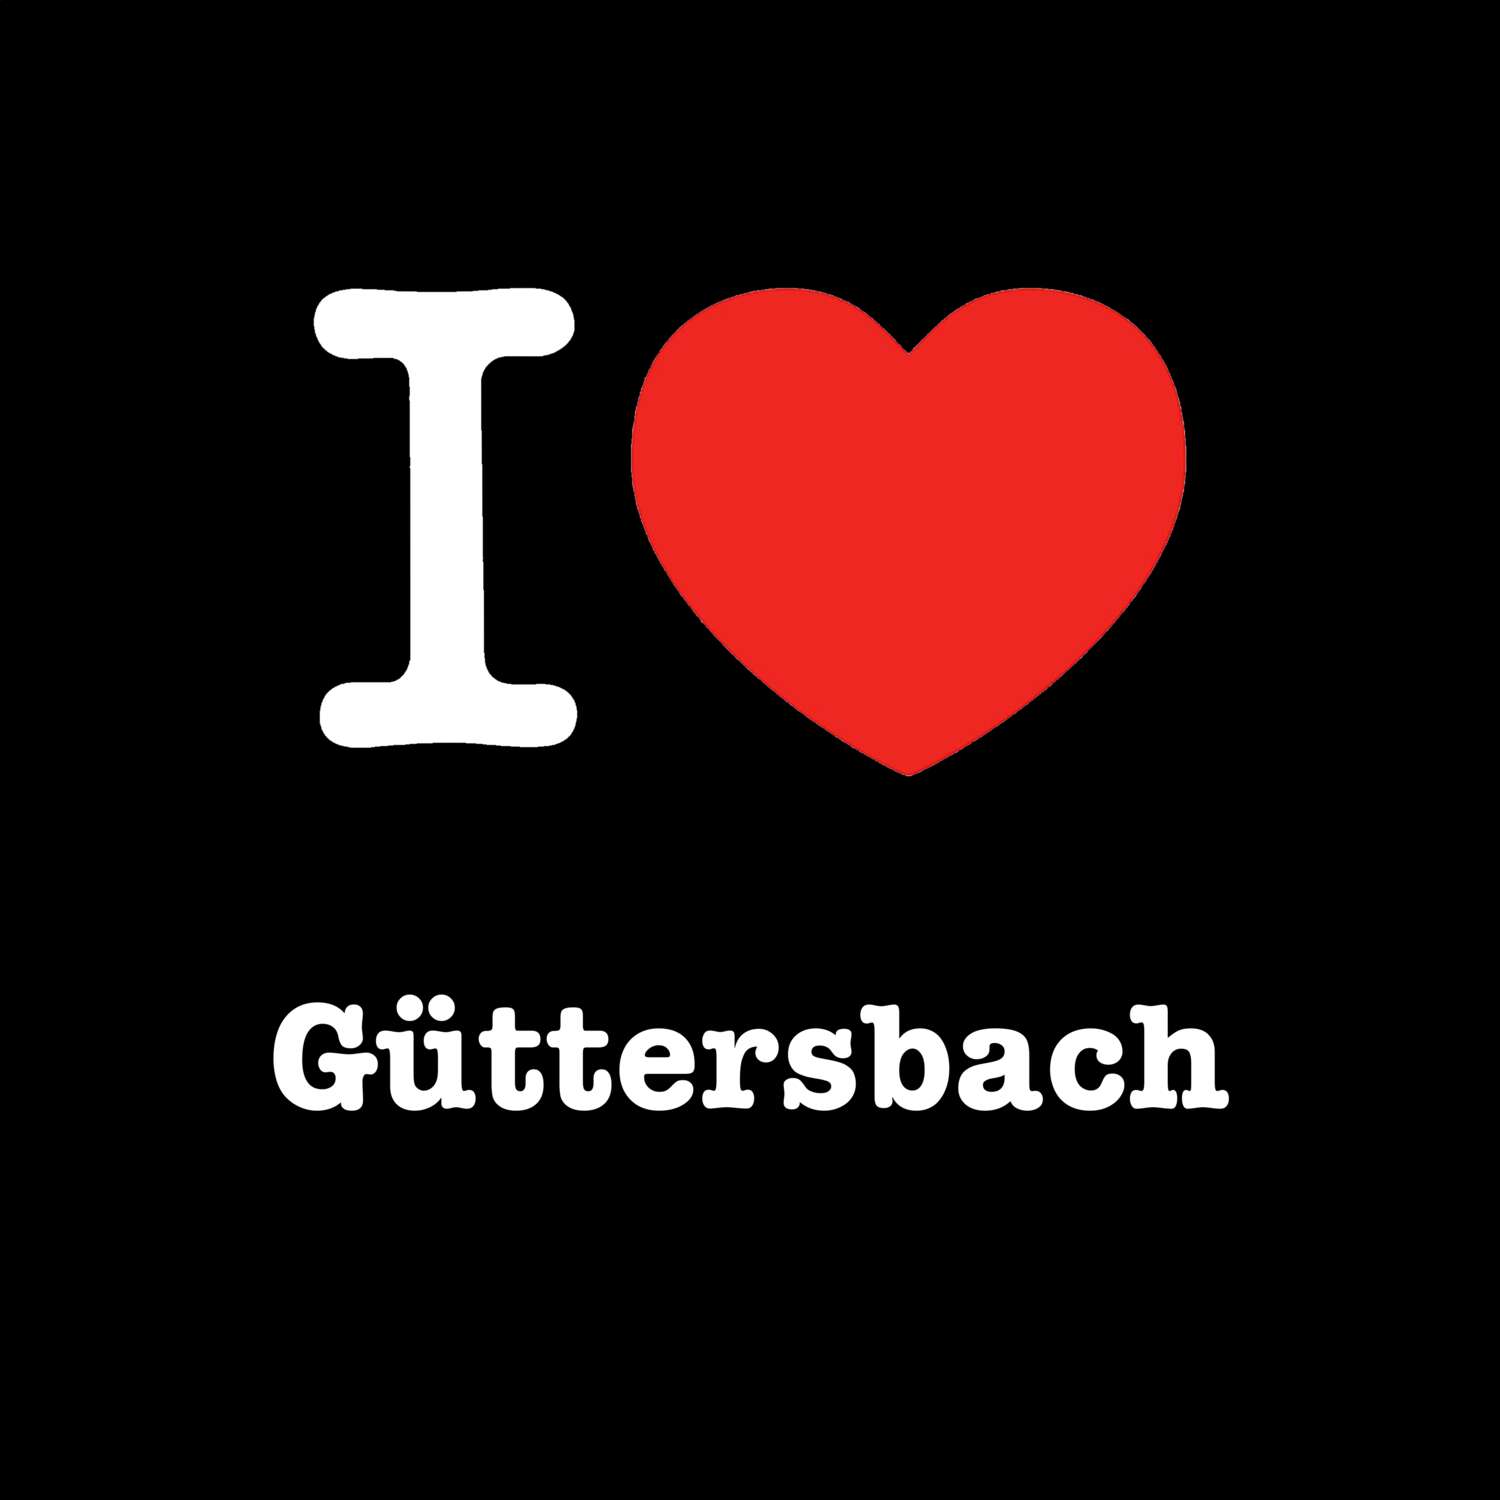 Güttersbach T-Shirt »I love«